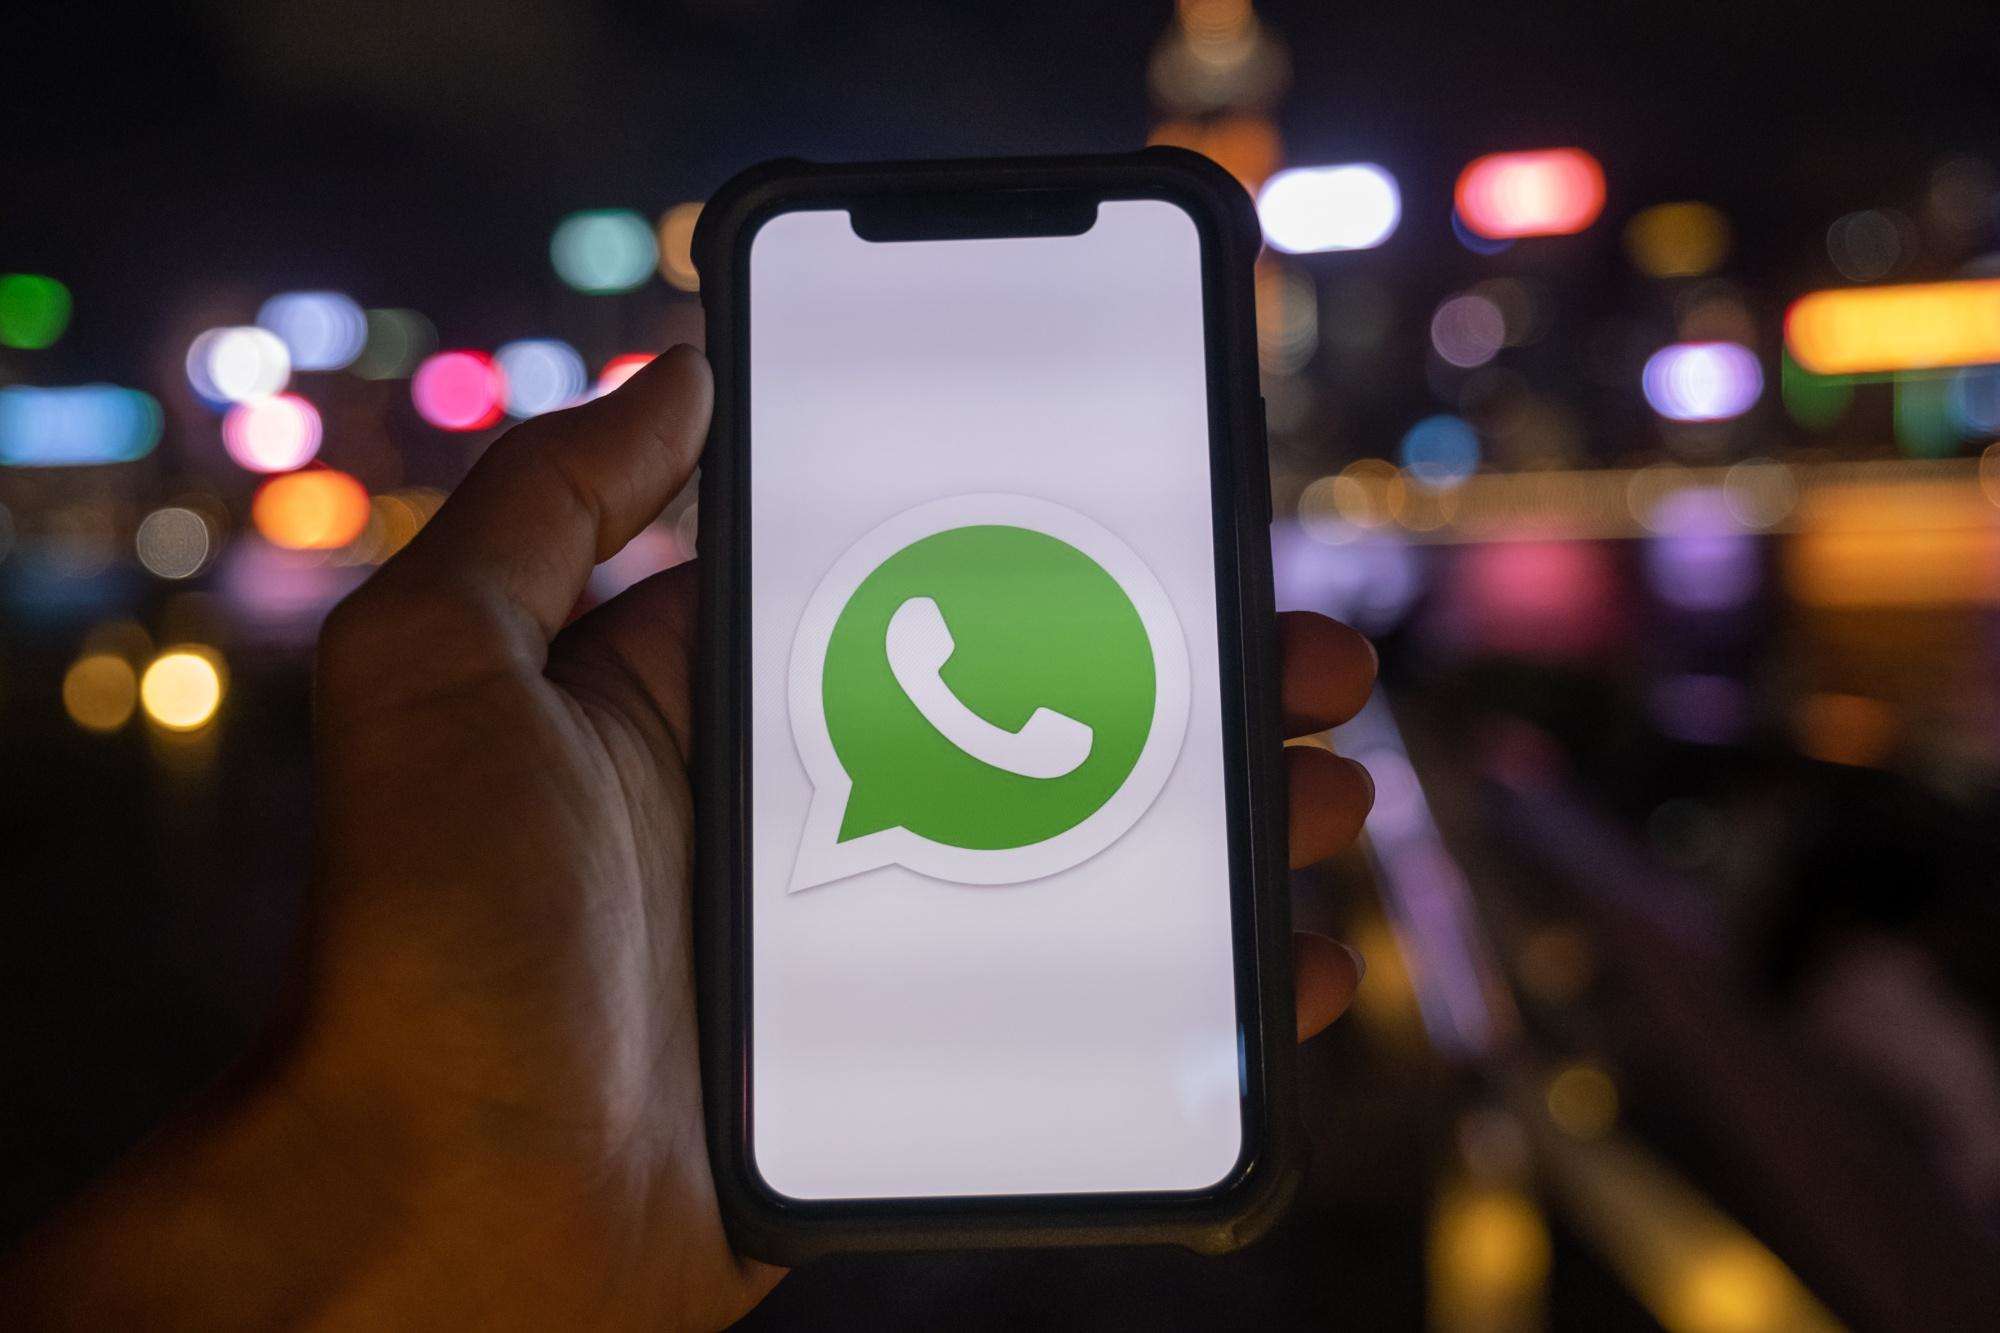 भारत सरकार ने WhatsApp गोपनीयता नीति को वापस लेने के लिए कहा,जानें रिपोर्ट